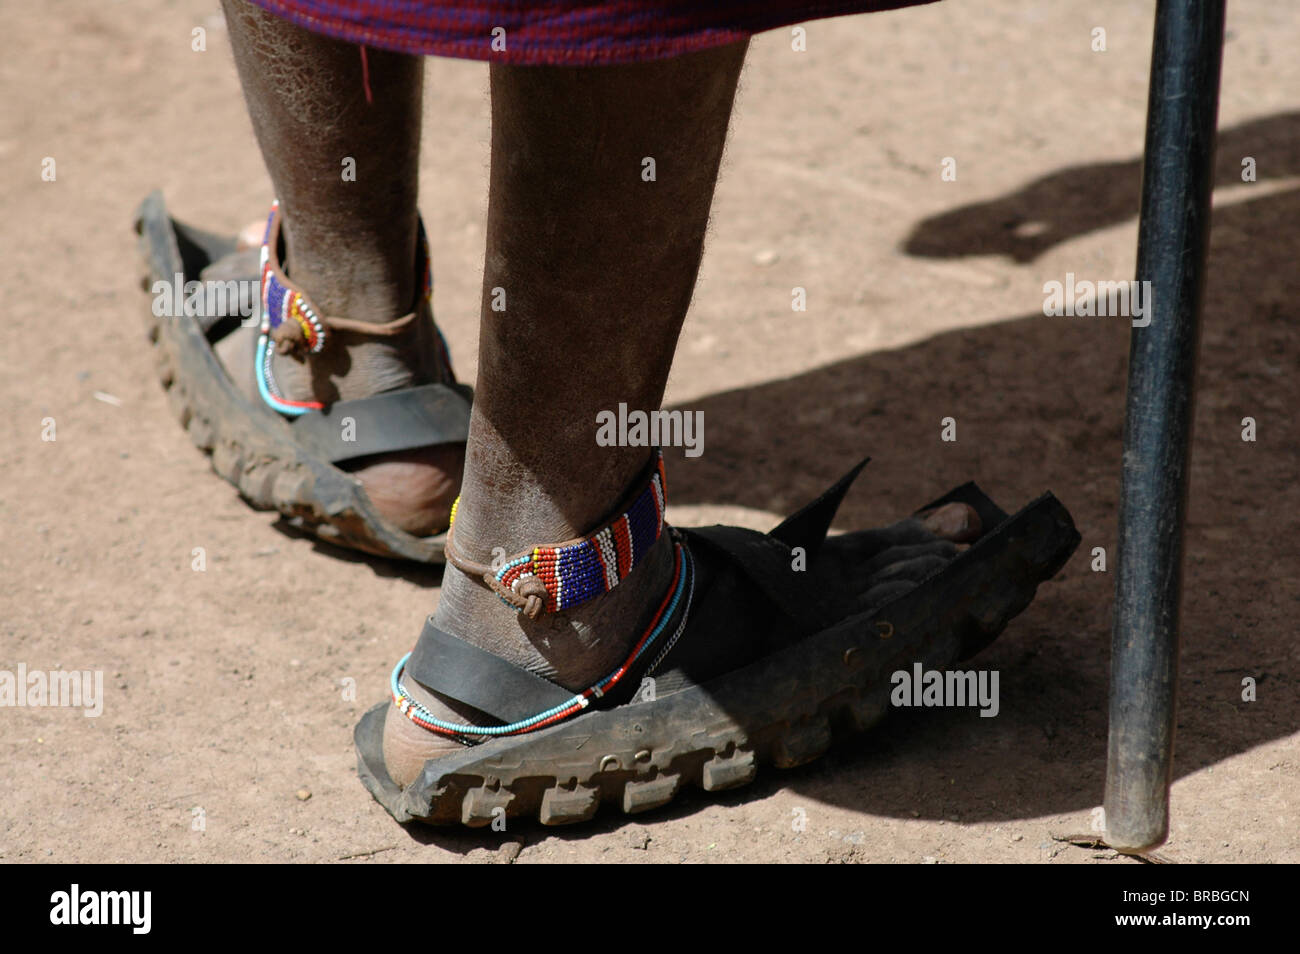 Nahaufnahme von Masai Schuhe von Motorradreifen Stockfotografie - Alamy